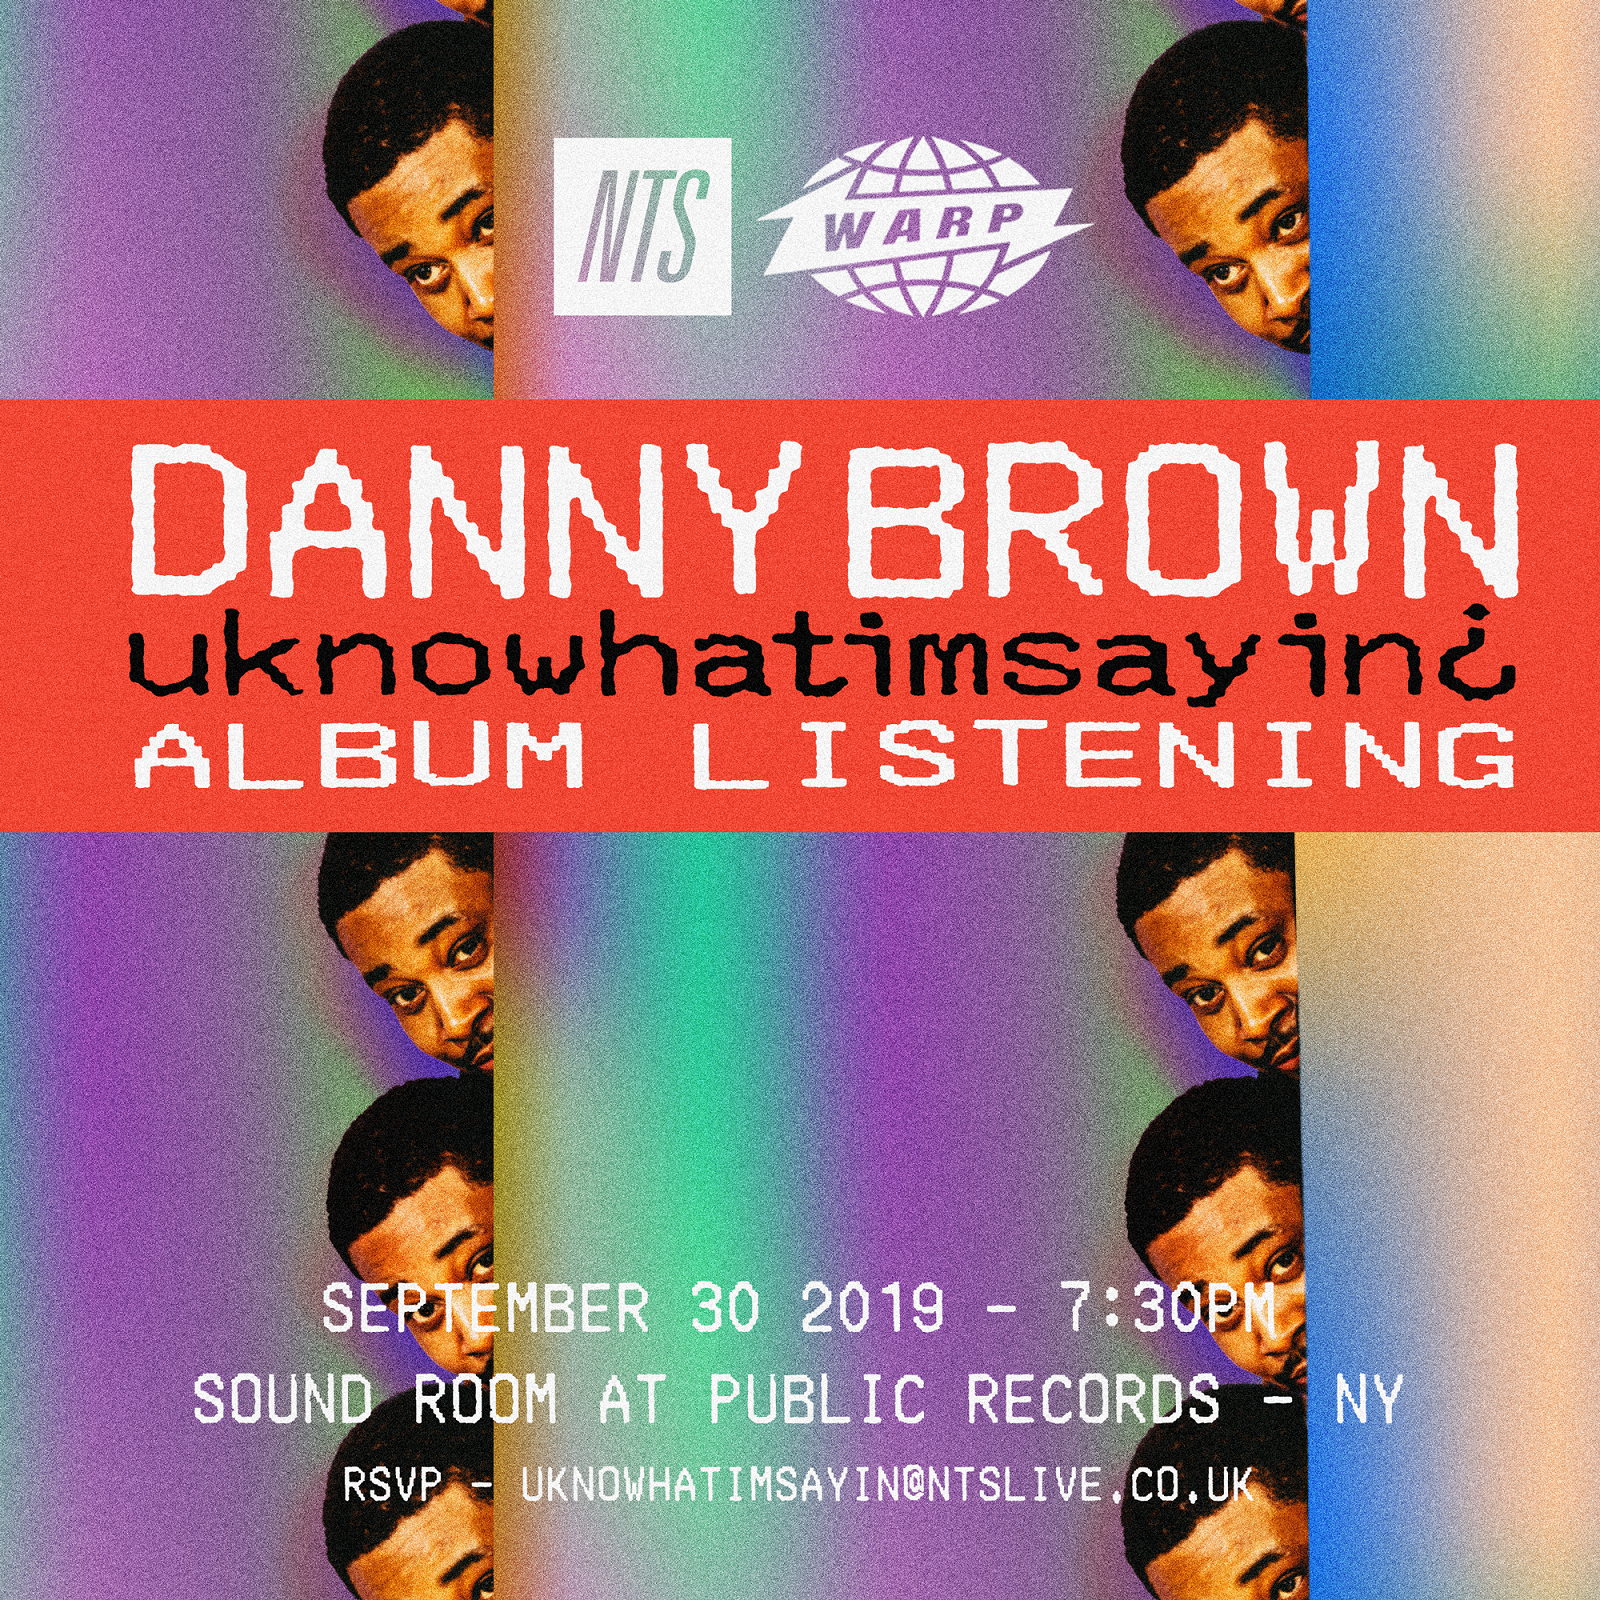 1.1 - Warp x NTS - Danny Brown - Album Listening.png